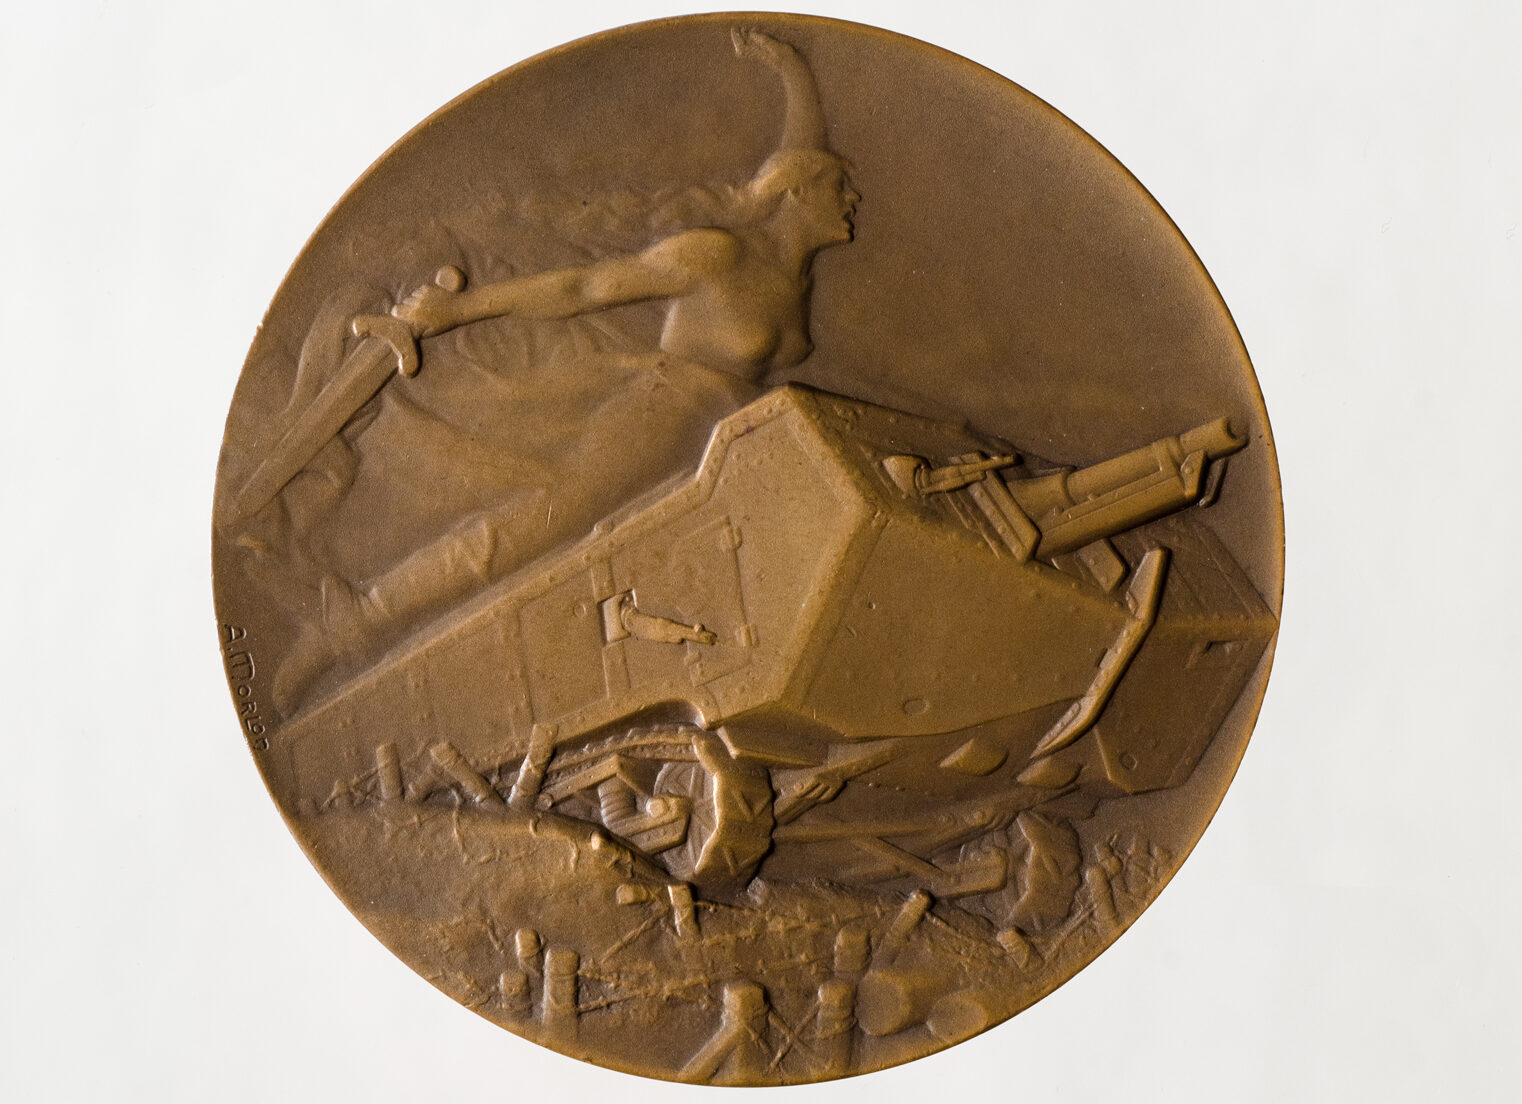 Pierre-Alexandre Morlon (1878-1951), Les tanks, 1918. Médaille en bronze. Collection Denis Grisel. Photo service de presse. © B. Mahuet, musée des Ursulines de Mâcon